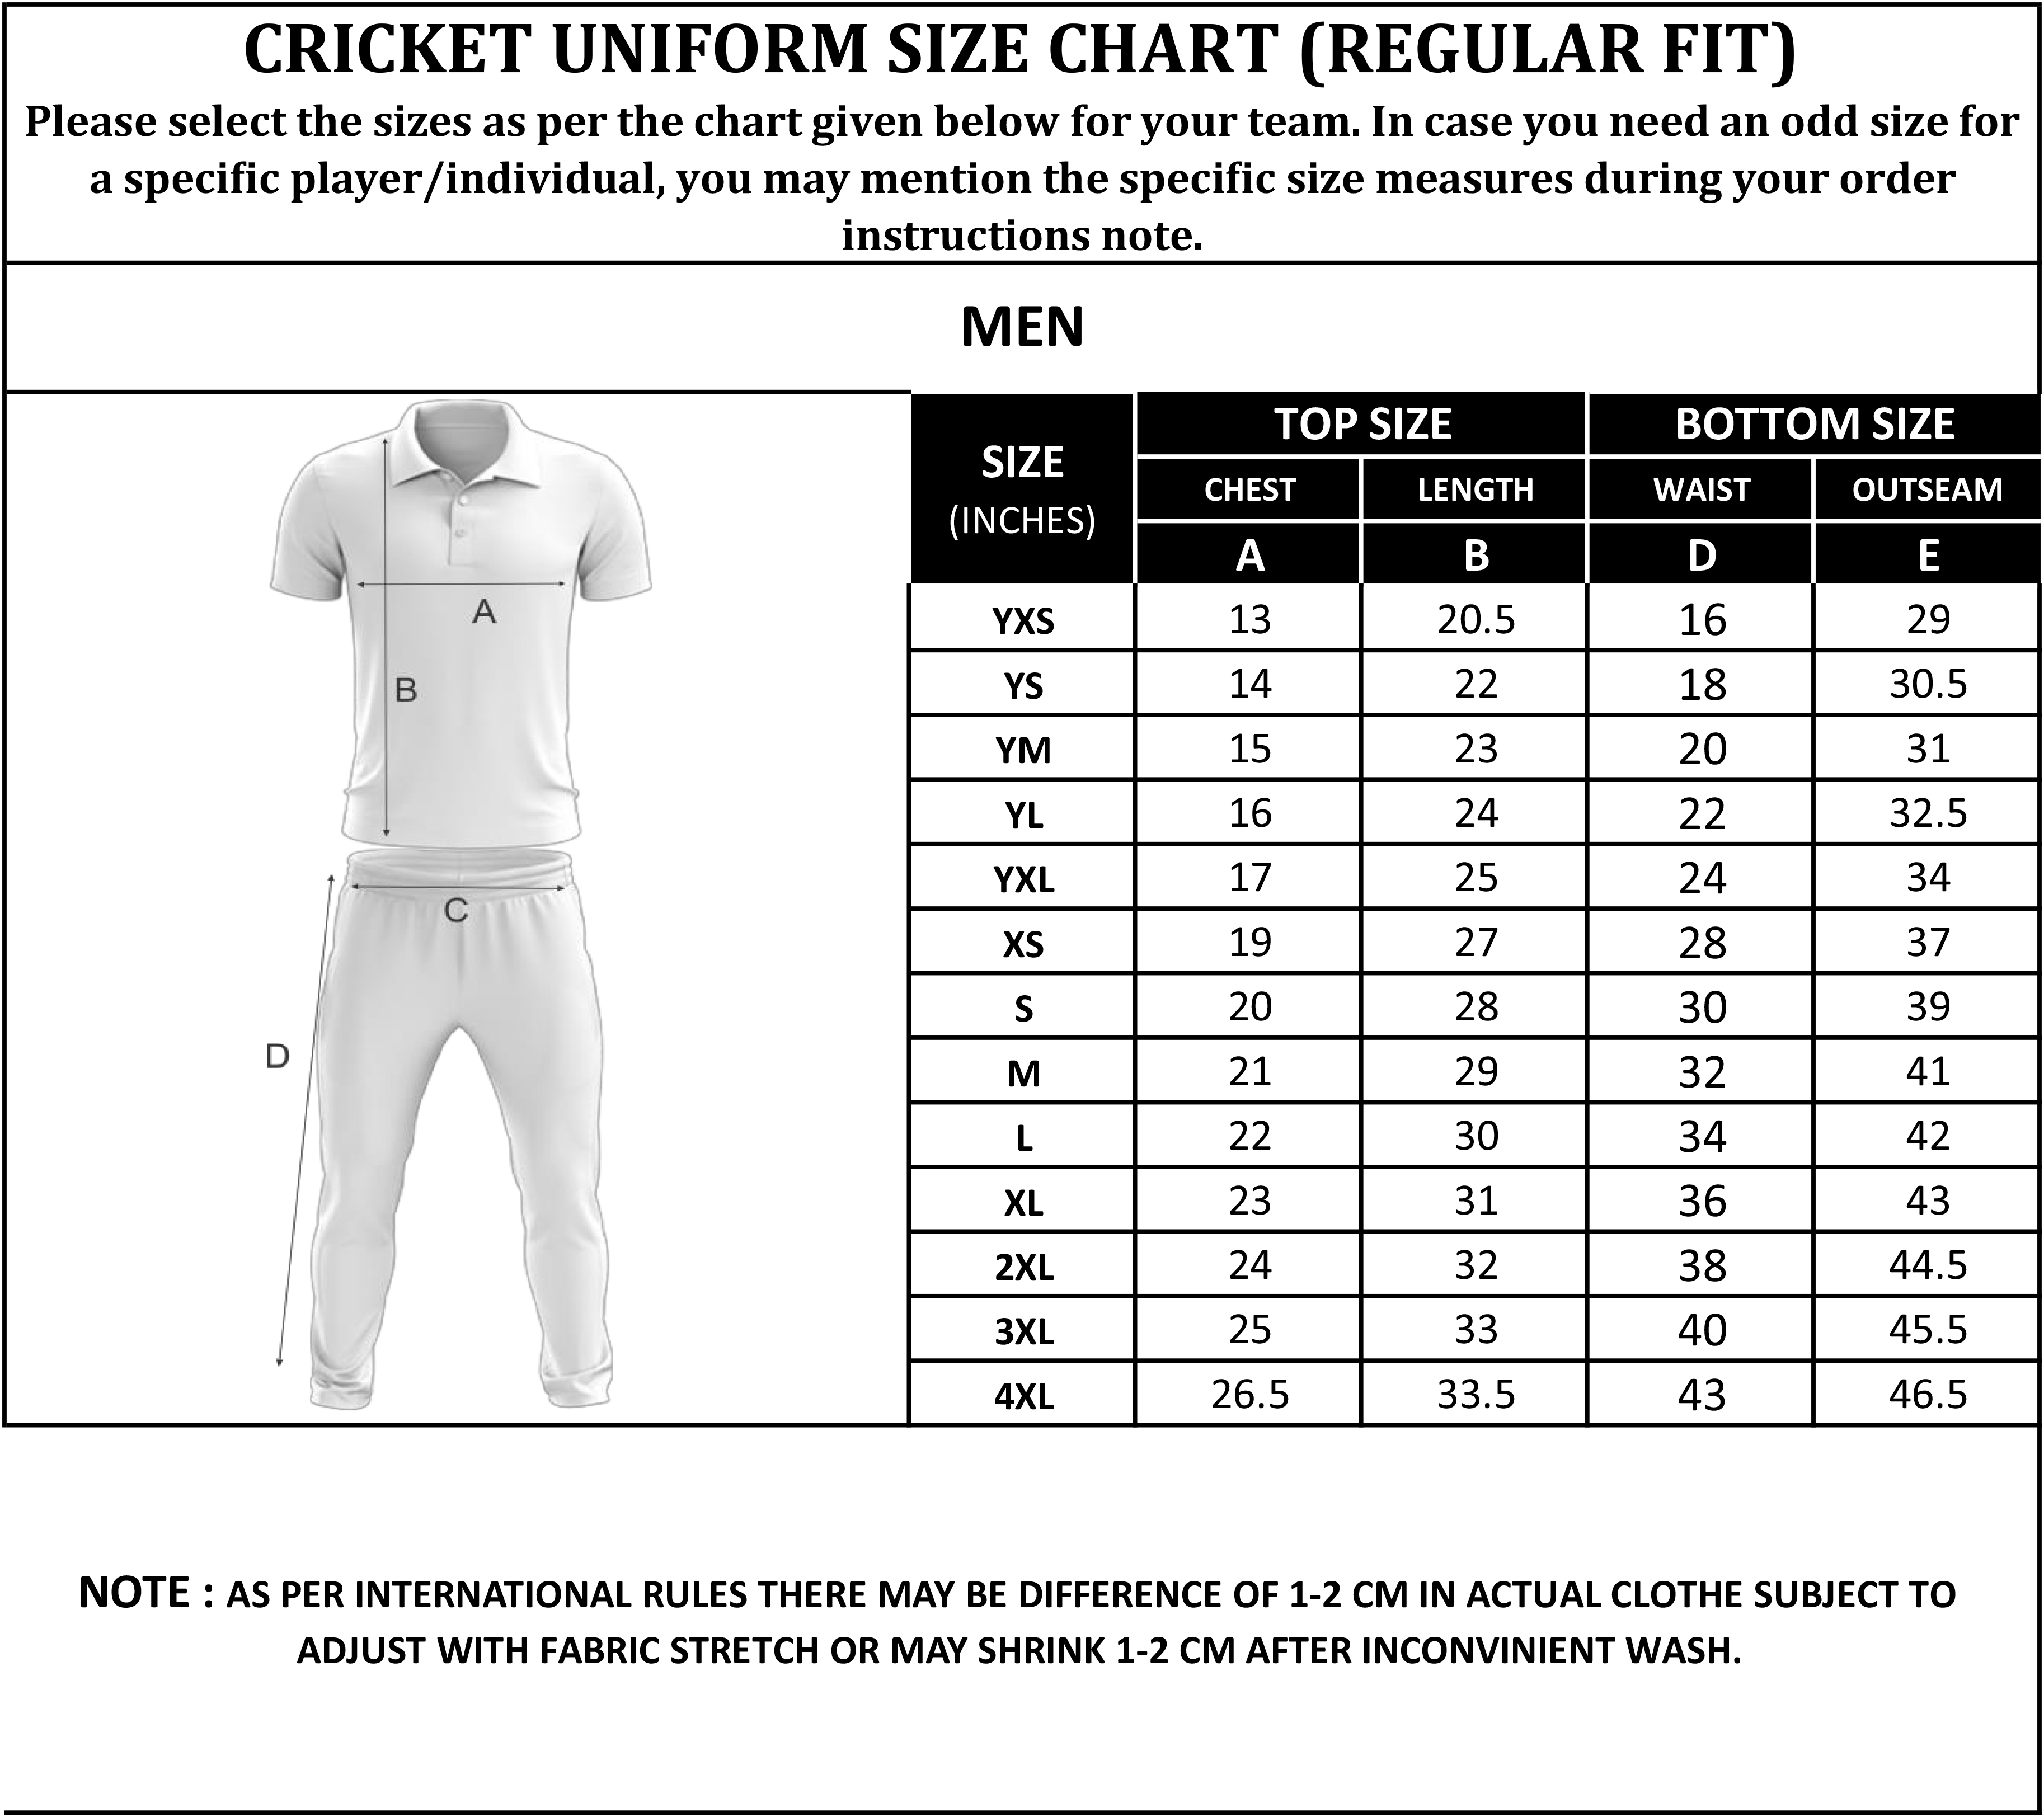 Cricket Wear Size Chart